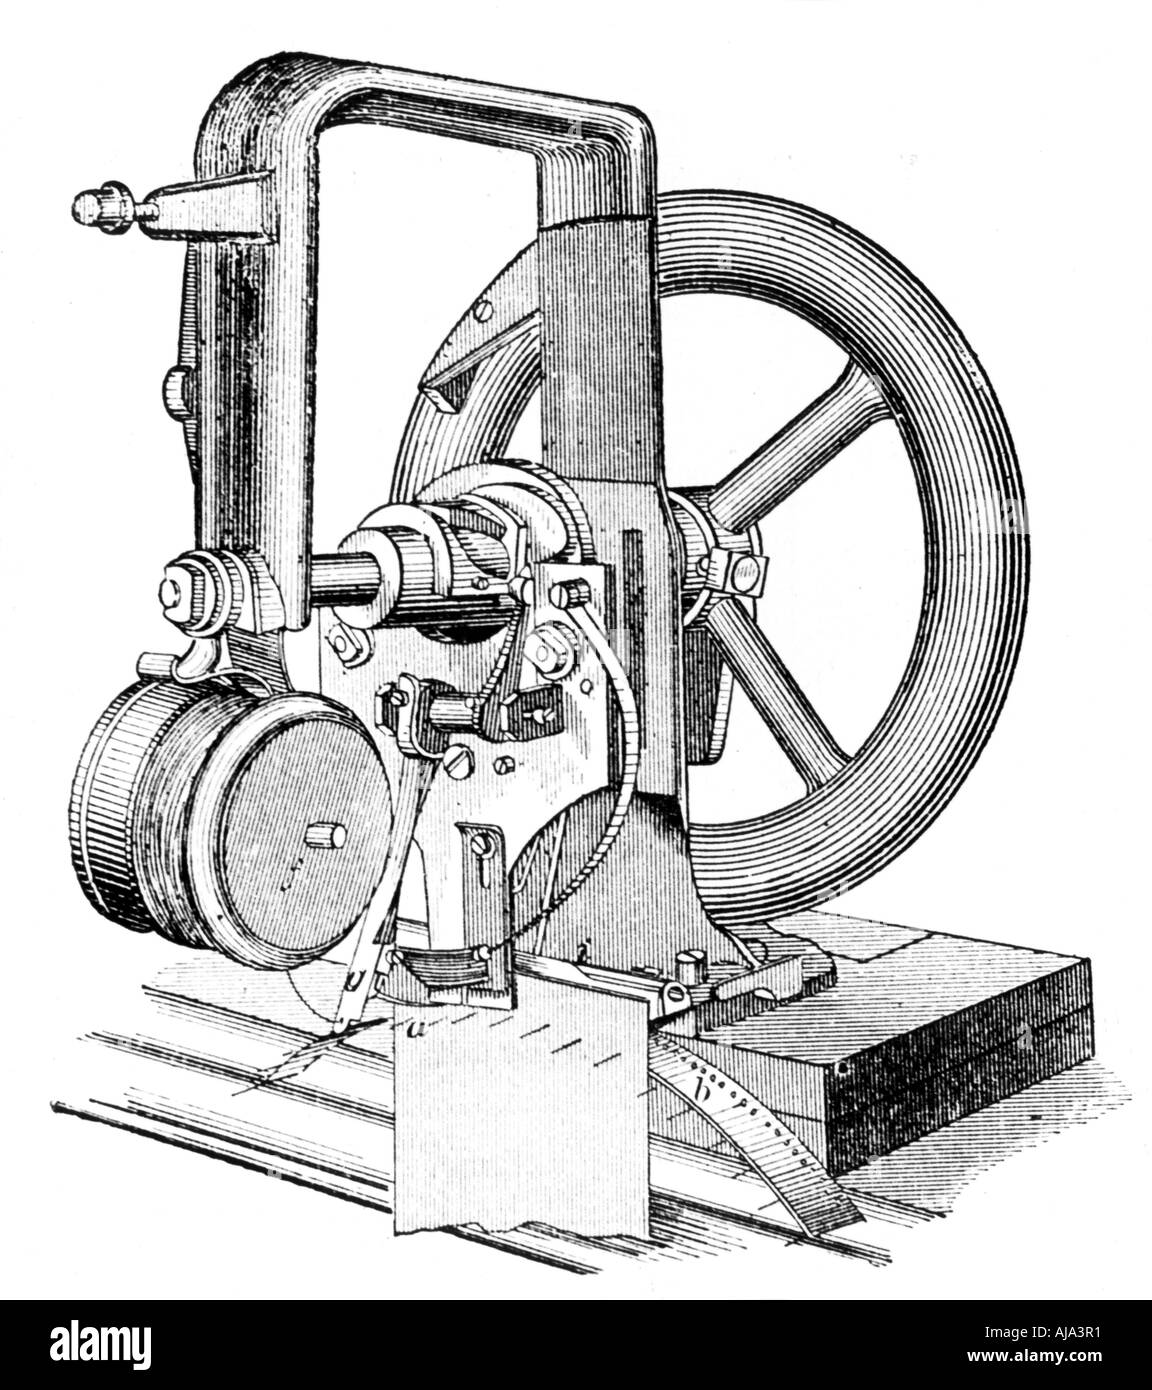 Première machine à piquer, inventé par Elias Howe, c du xixe siècle. Artiste : Inconnu Banque D'Images